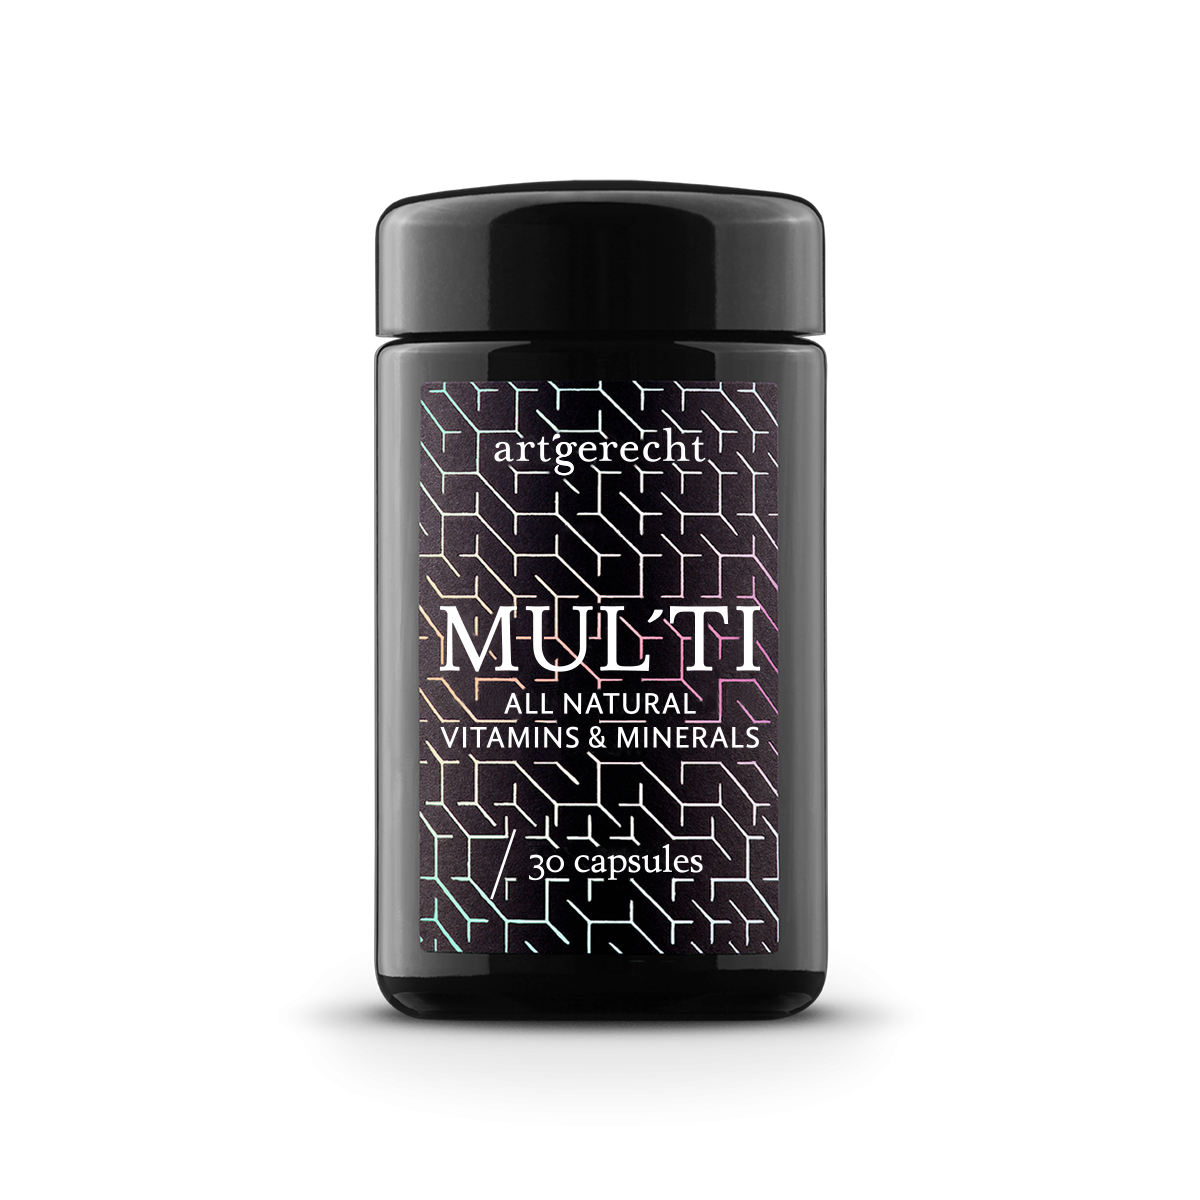 MUL’TI - Natürliches Multivitamin